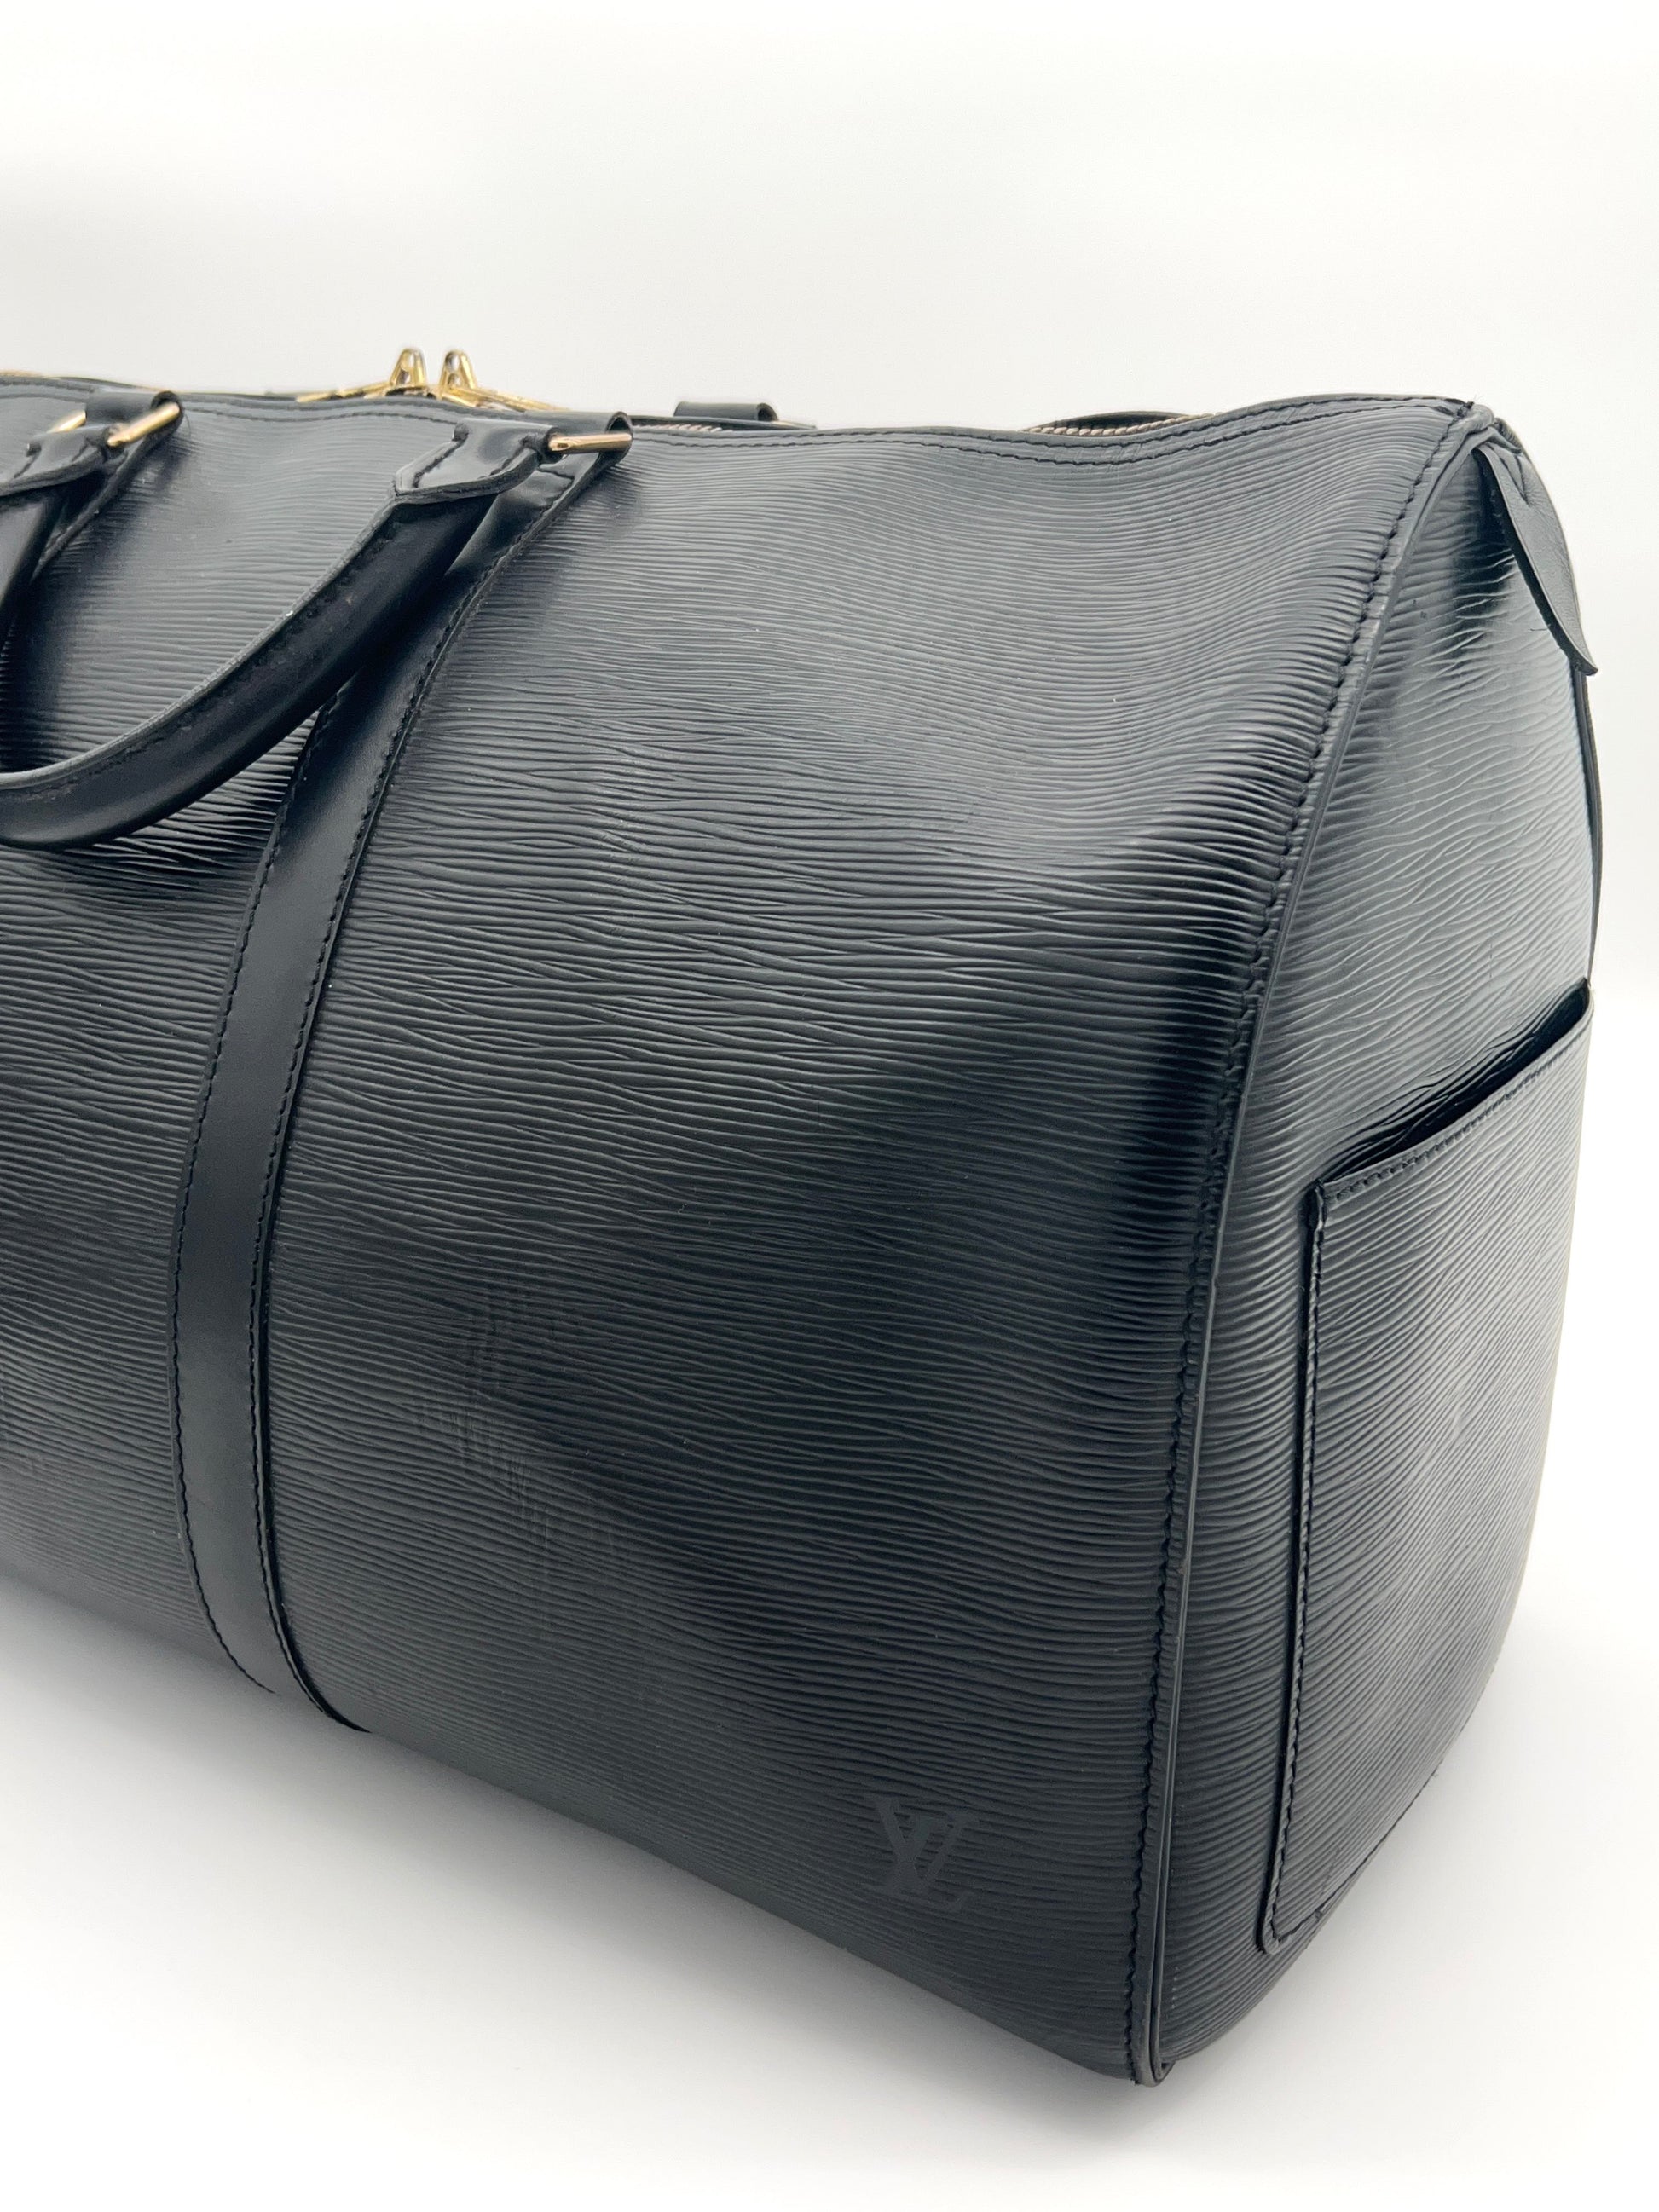 Louis Vuitton - Louis Vuitton Epi Speedy 25 on Designer Wardrobe